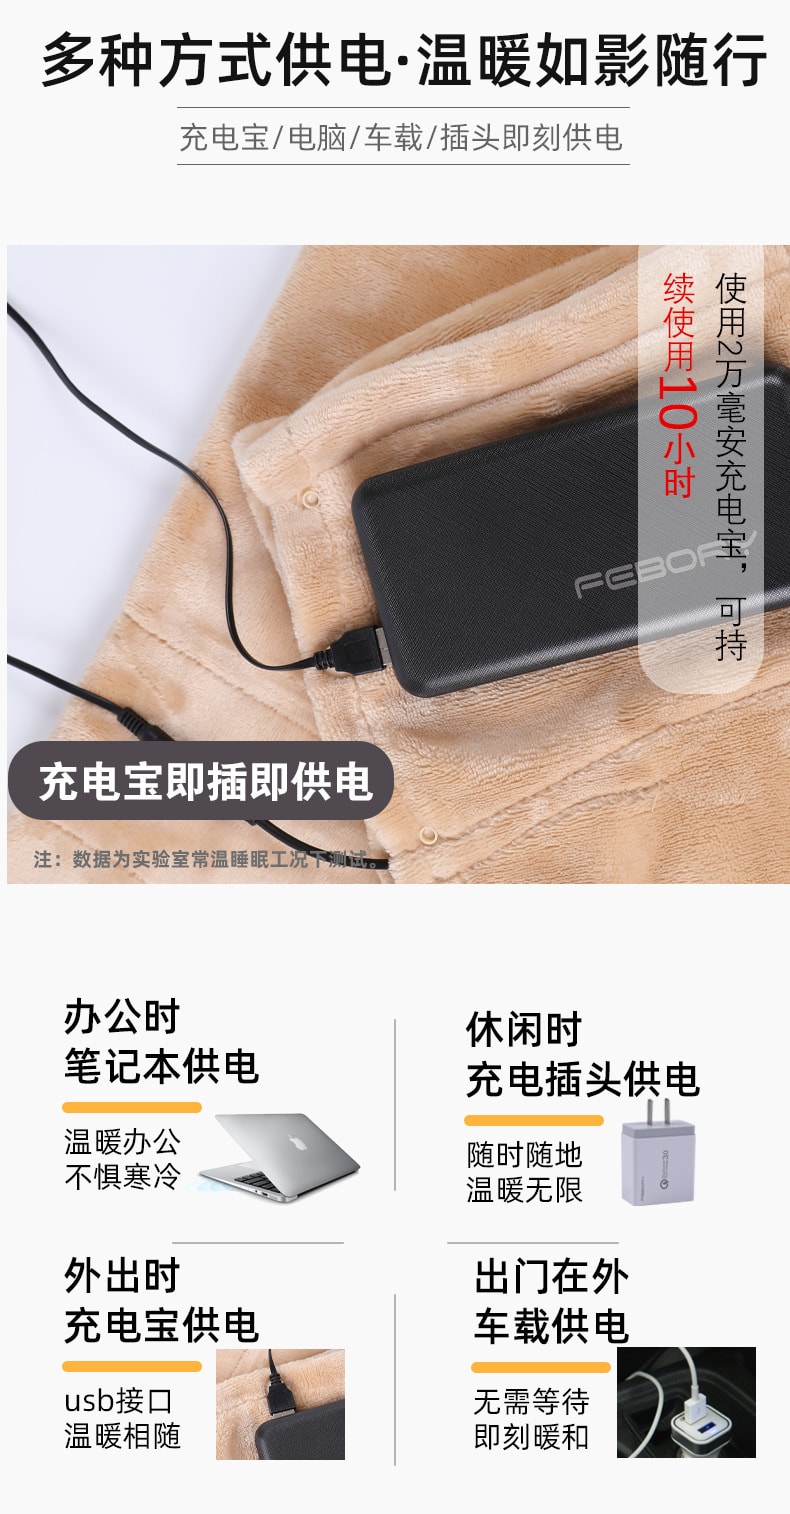 【中国直邮】华亚优选 冬季好帮手 电热毛毯 电热毯充电USB5V(粉色加厚+定制适配器)